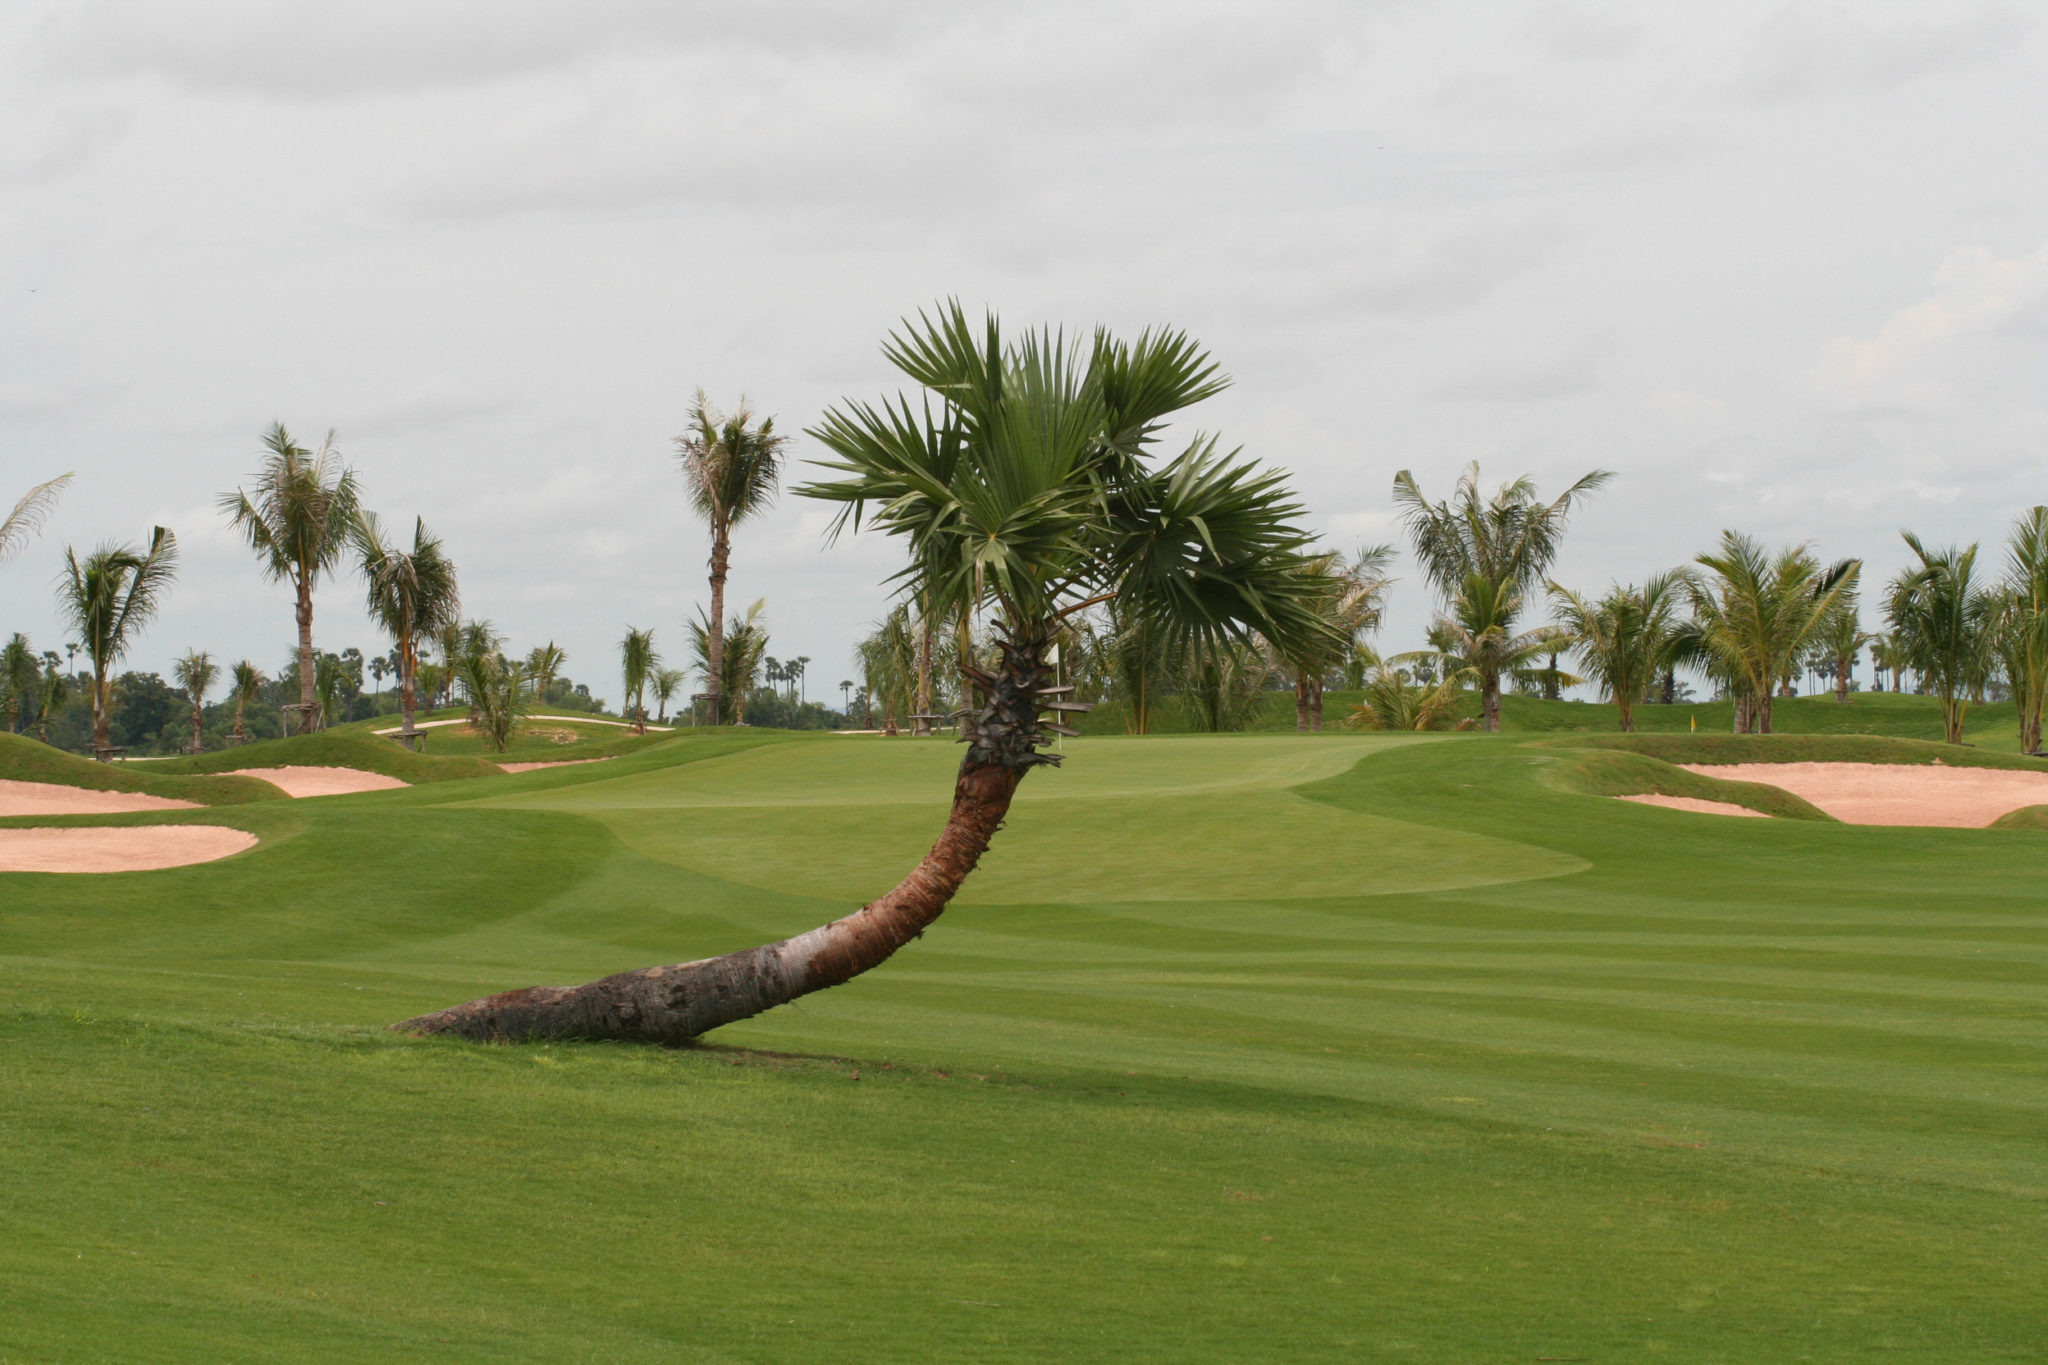 Blick auf grünen Golfkurs mit Palmen in Kambodscha